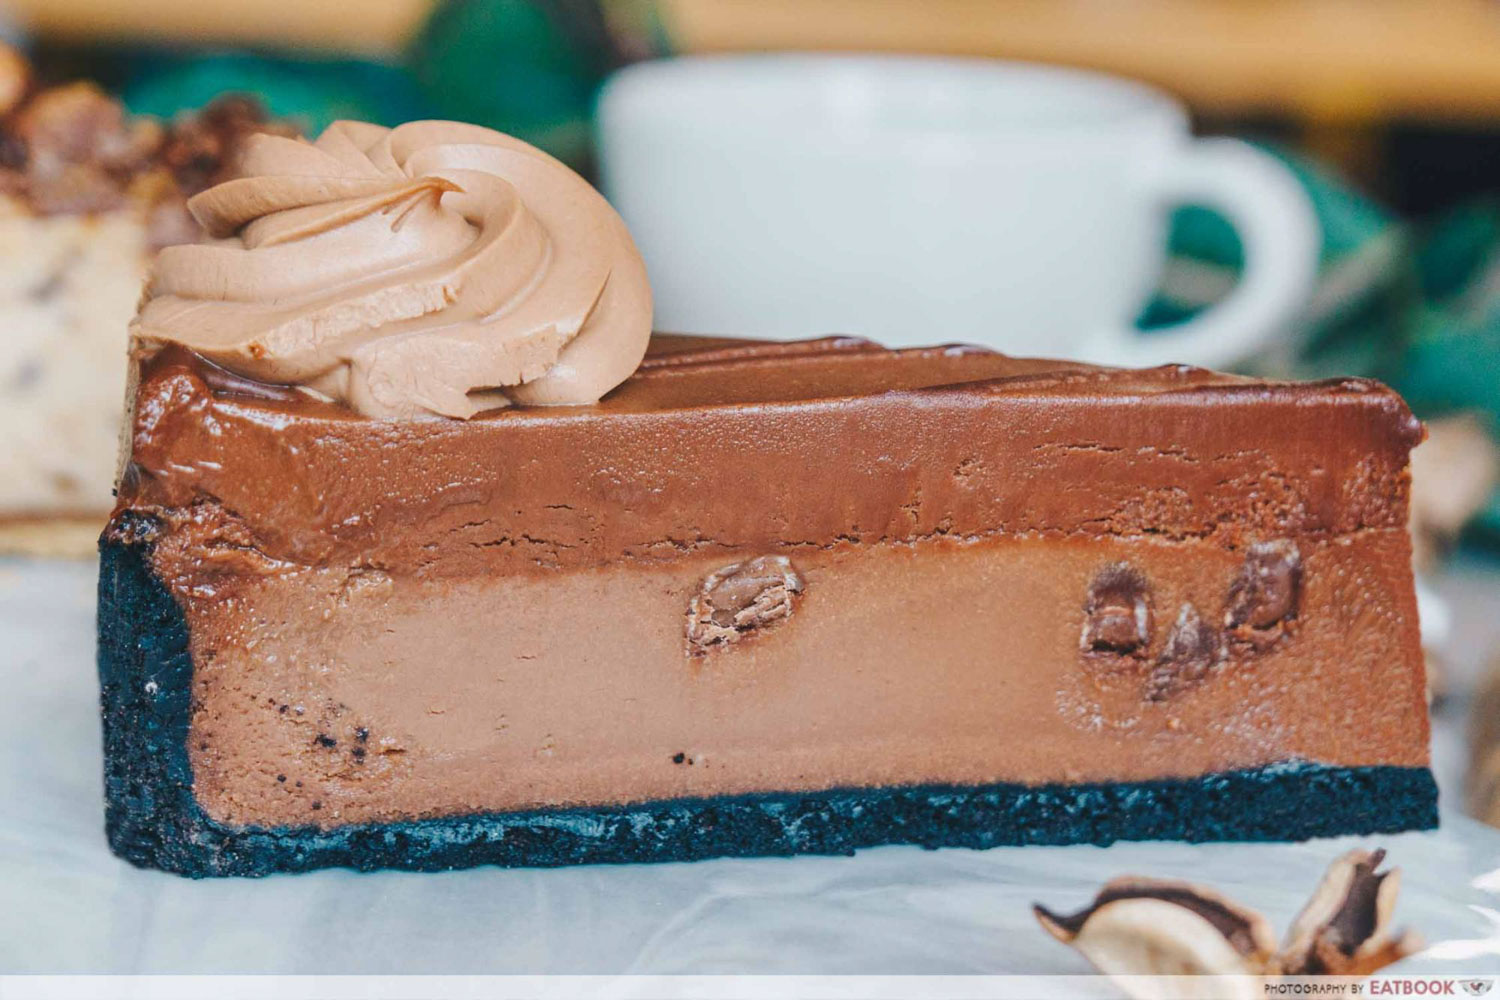 Beverly Hills Cheesecake - Godiva Double Chocolate Cheesecake Closeup